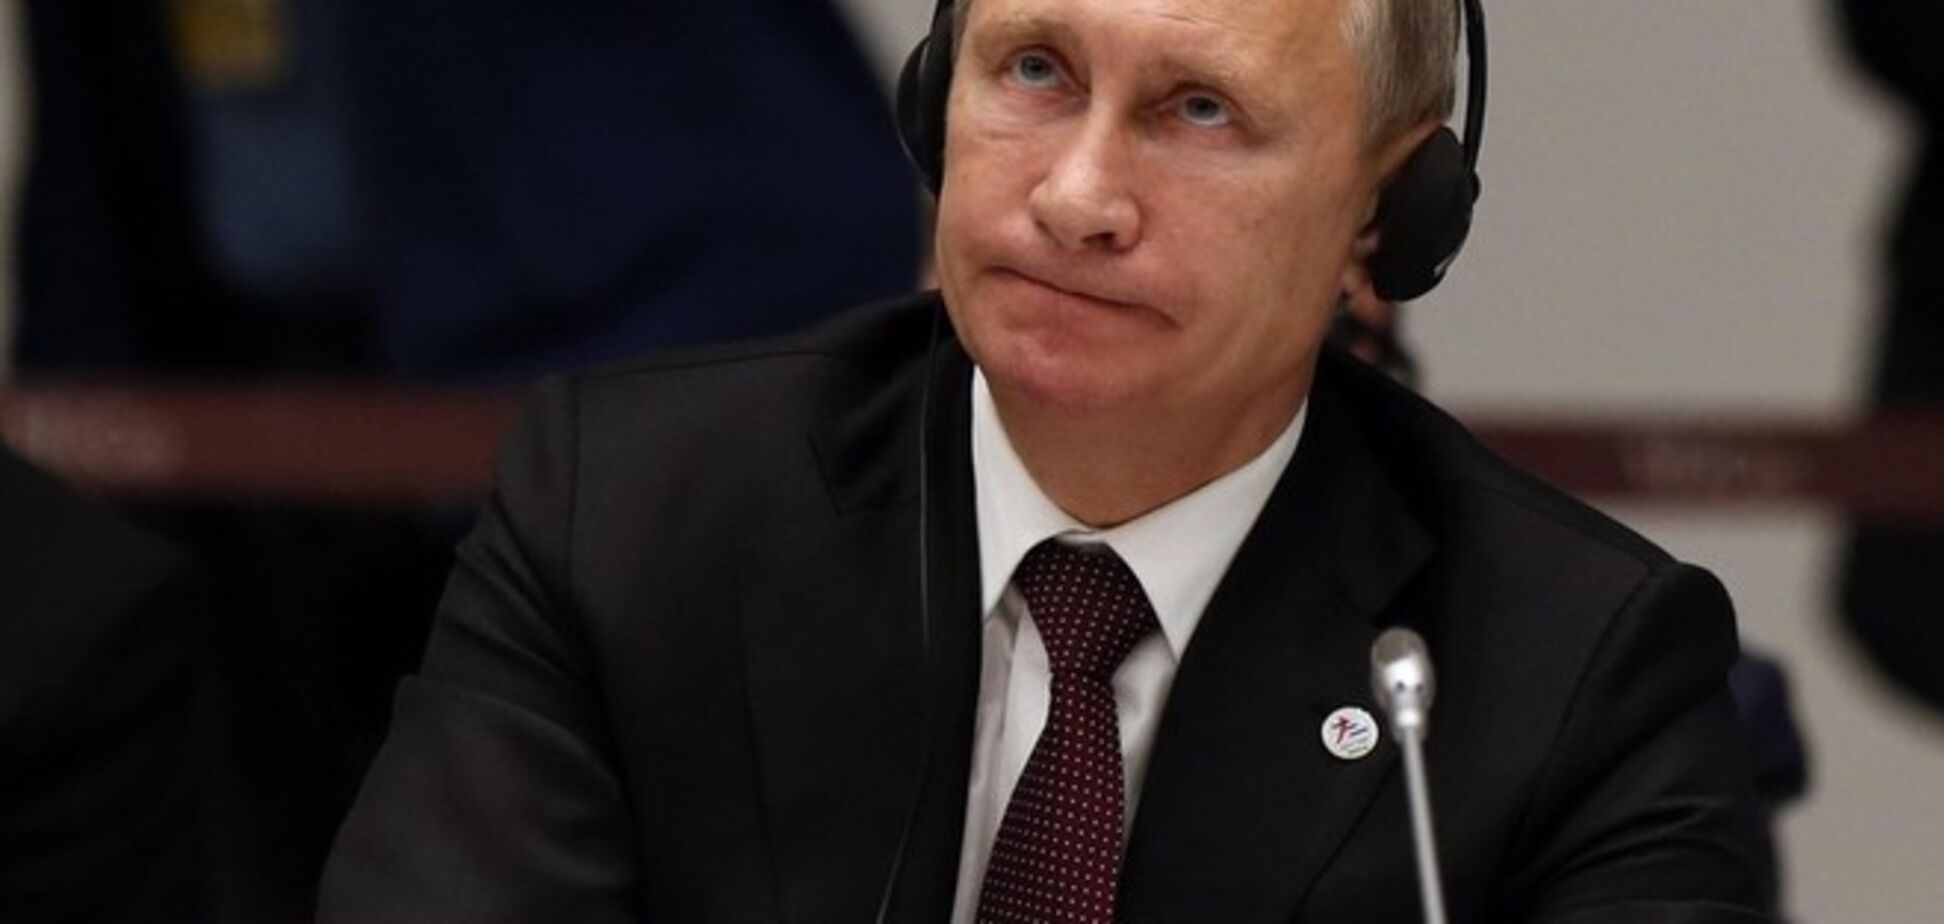 Пока санкции не приведут к падению рейтинга, Путин не остановится - Немцов 